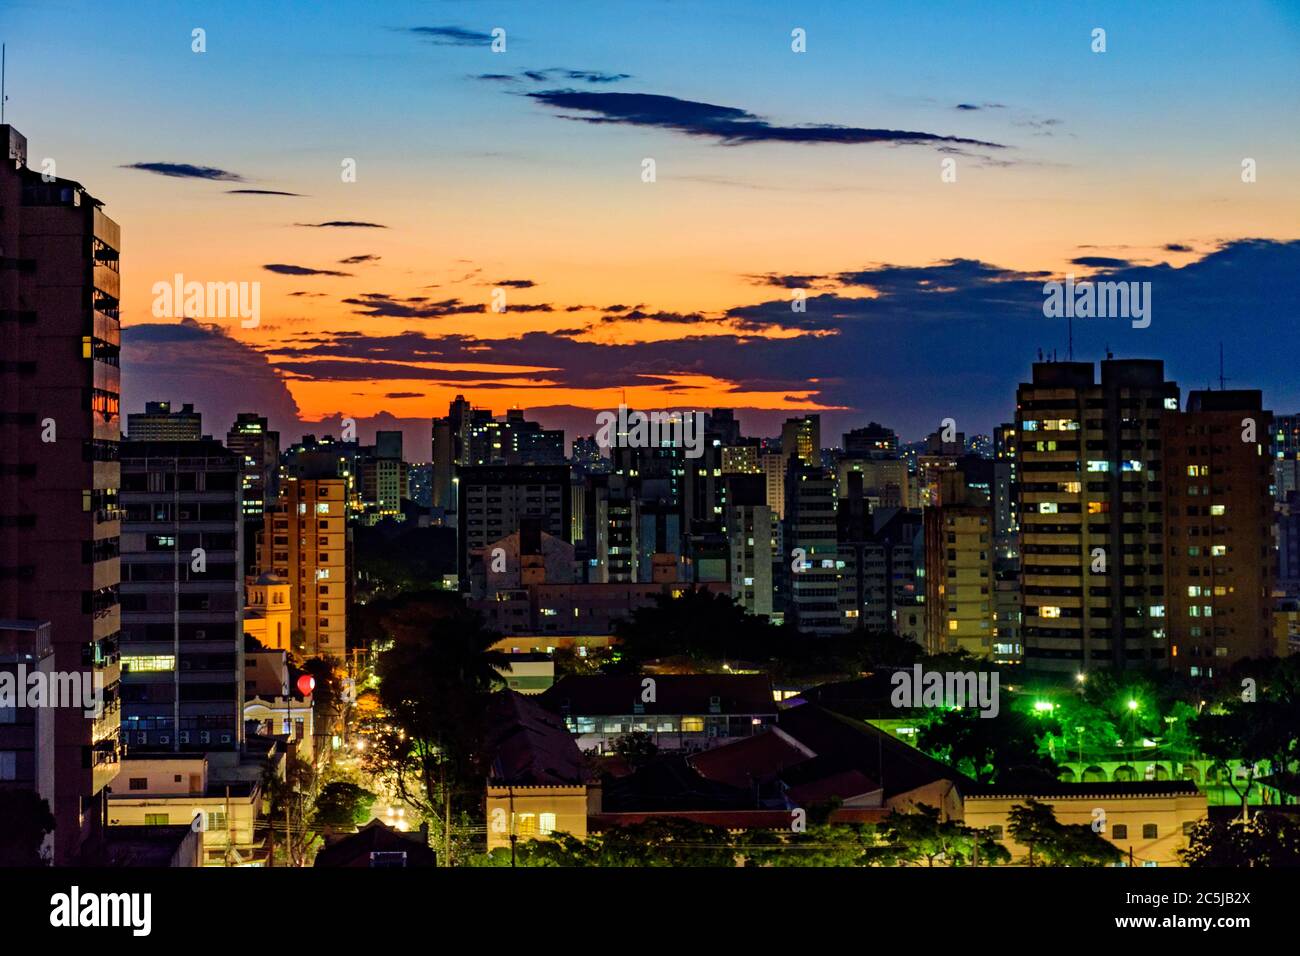 Vista urbana della città di Belo Horizonte in Minas Gerais al tramonto con i suoi edifici e le luci Foto Stock